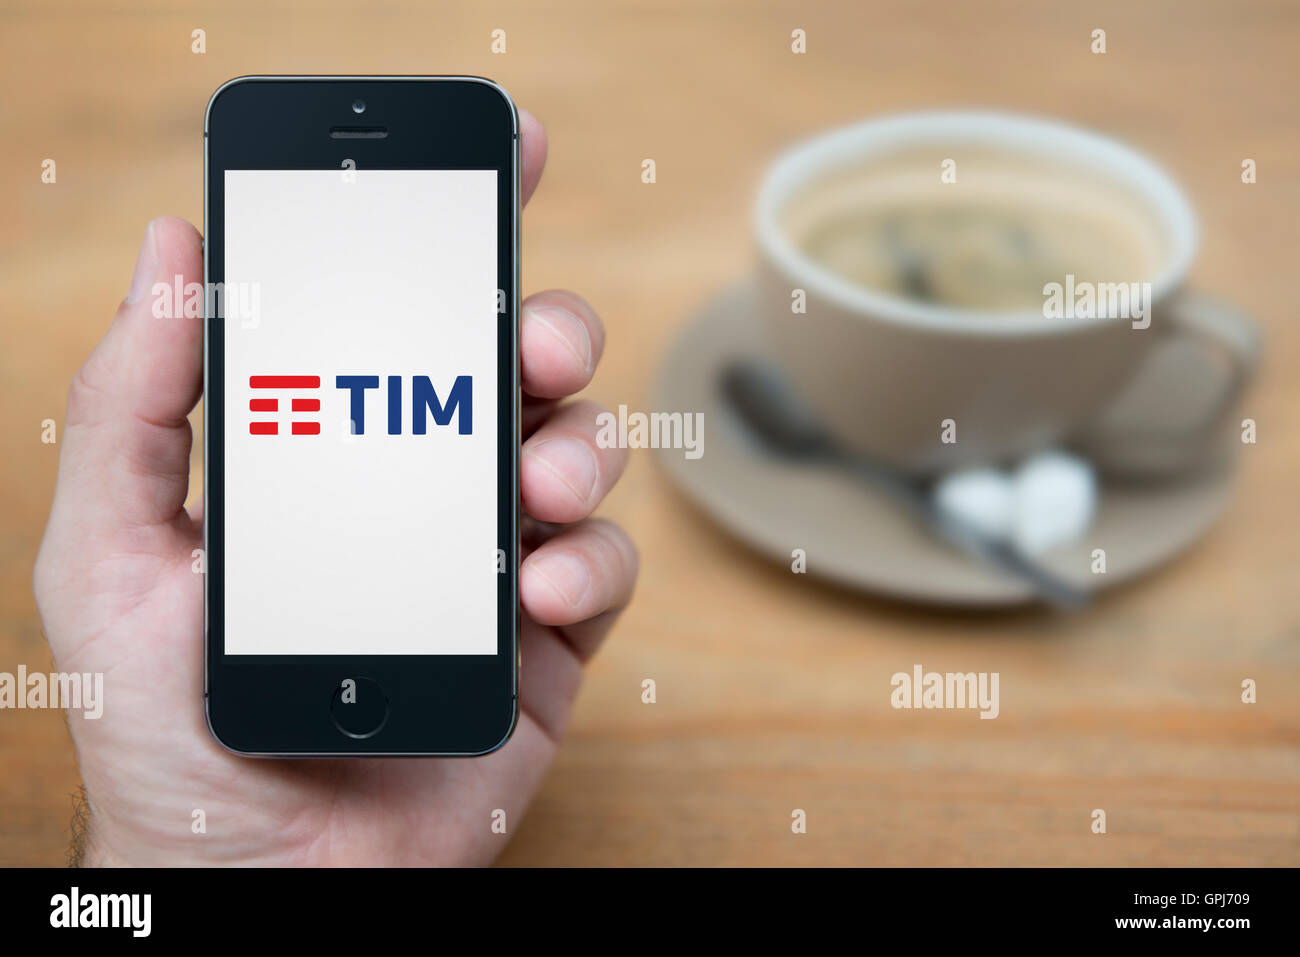 Un uomo guarda al suo iPhone che visualizza le telecomunicazioni TIM logo operatore, con una tazza di caffè (solo uso editoriale). Foto Stock